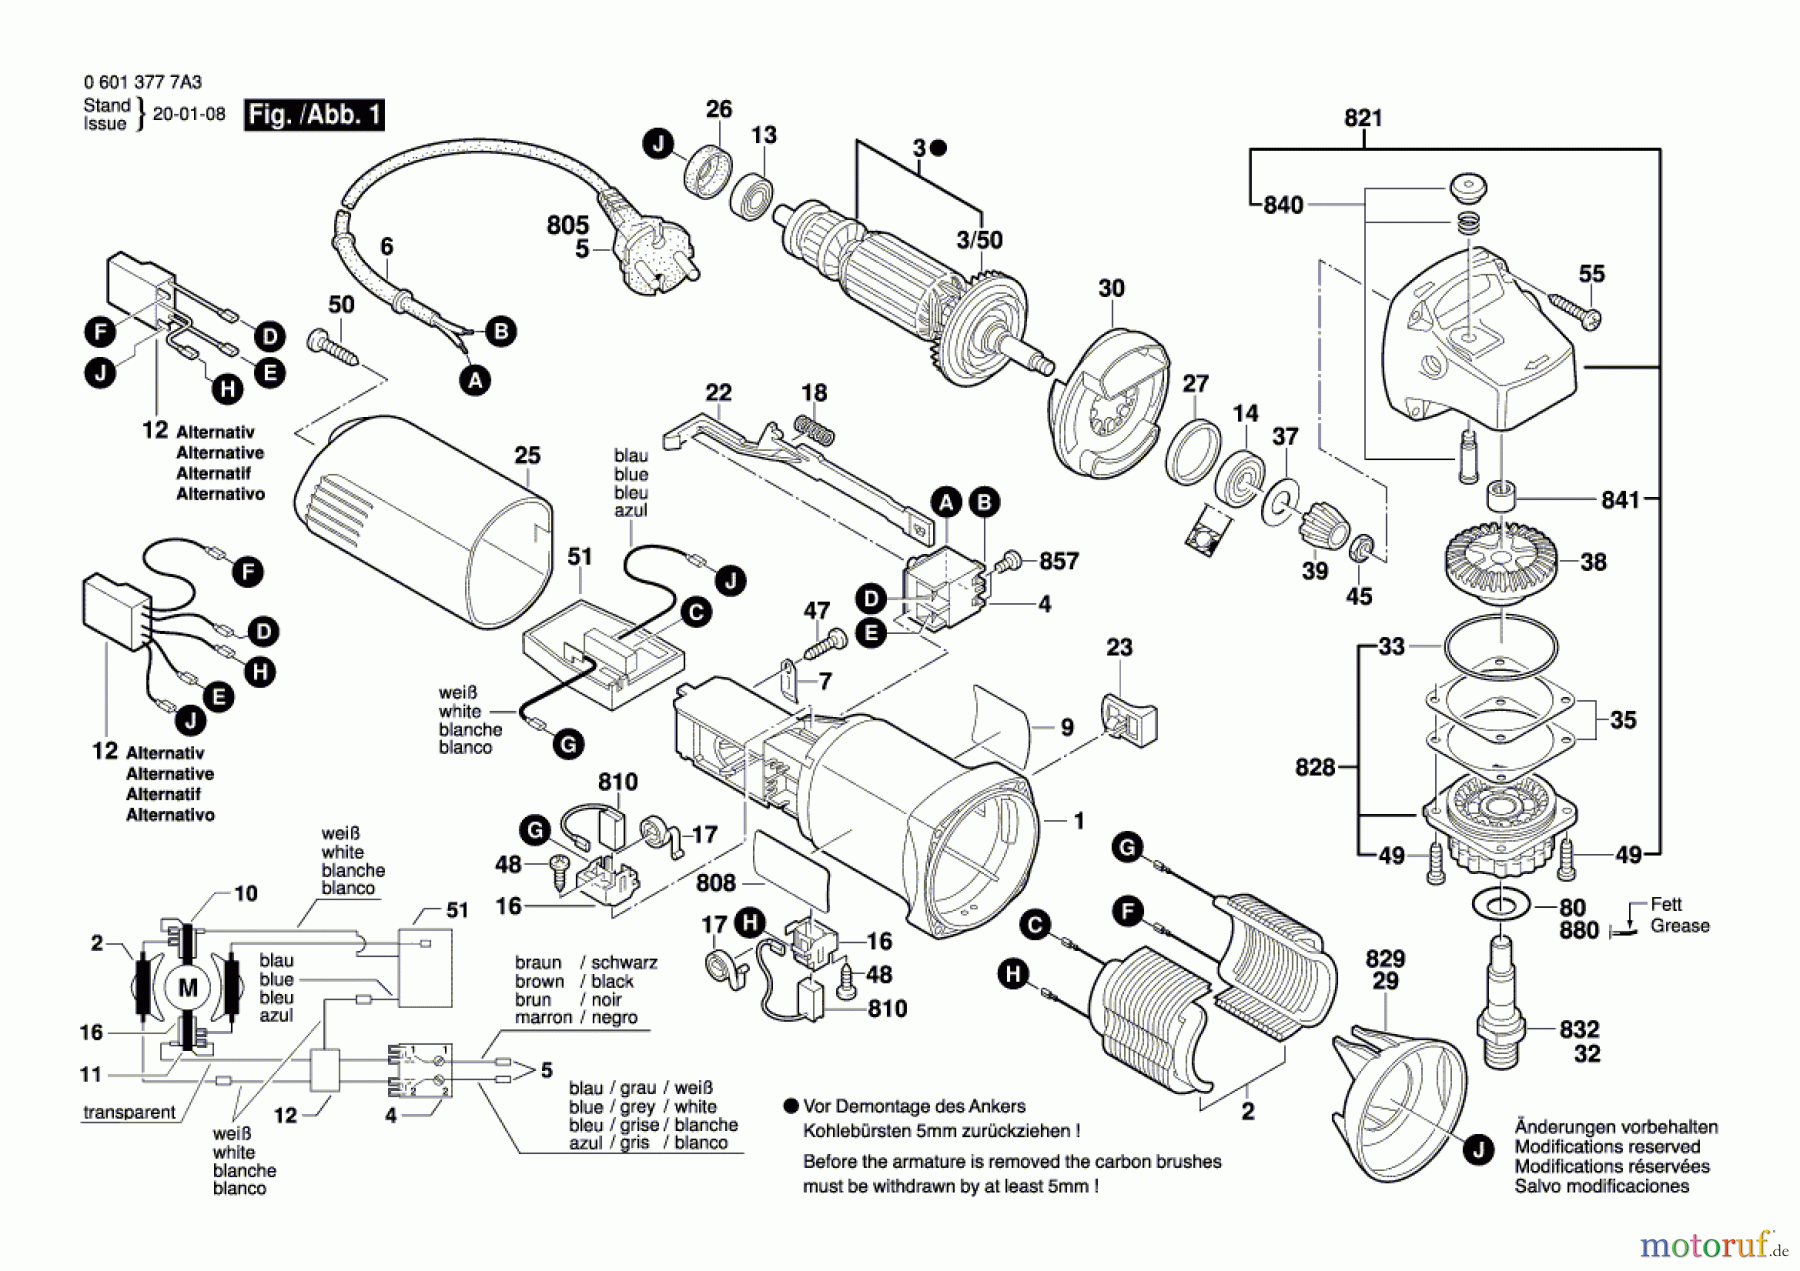  Bosch Werkzeug Winkelschleifer GWS 850 C Seite 1